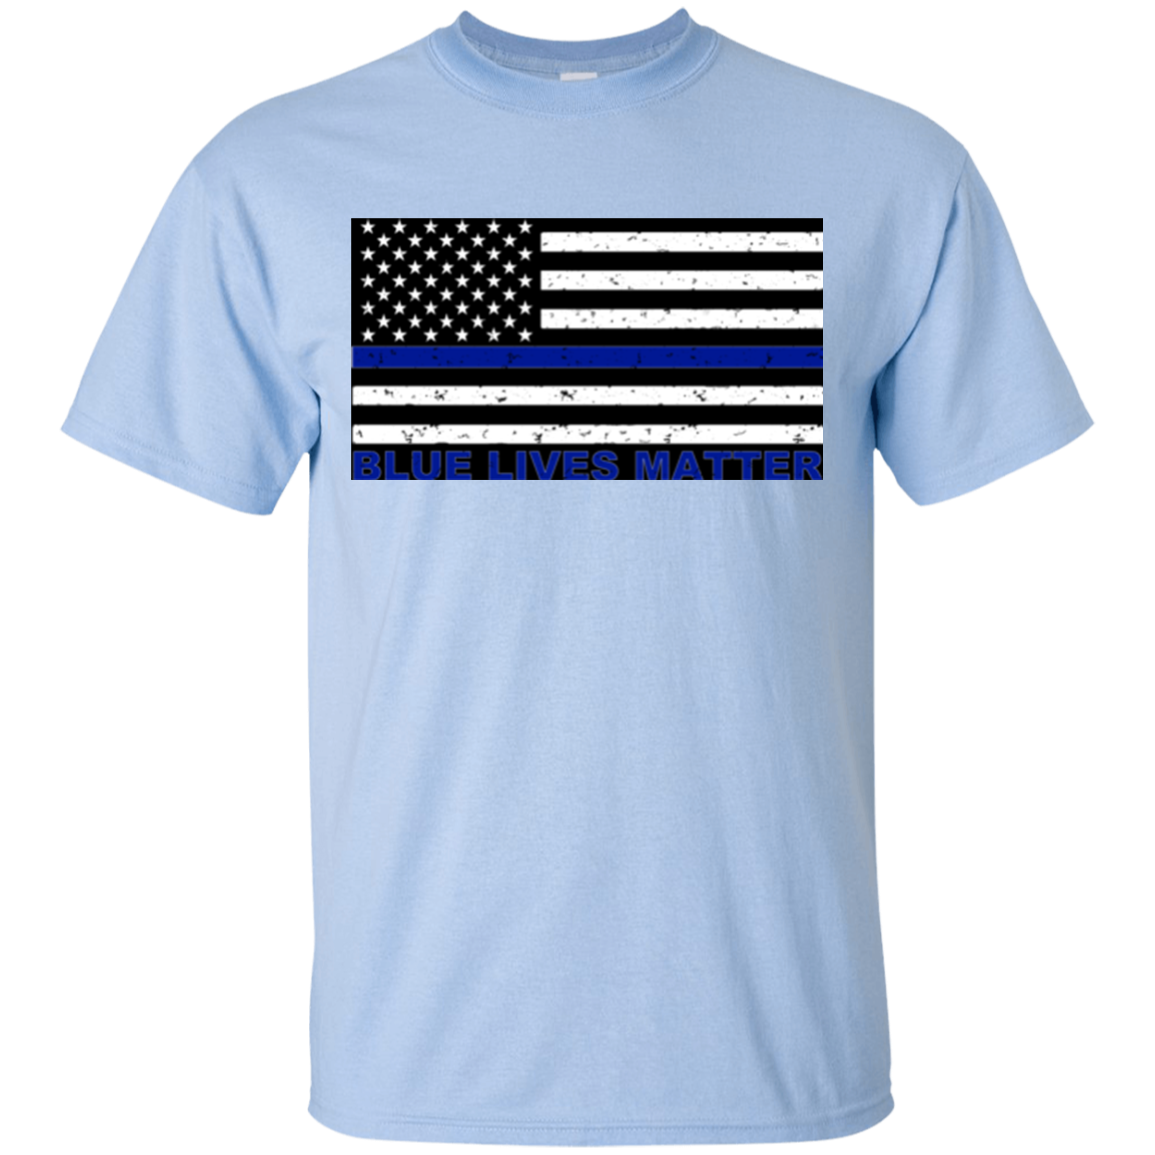 BLUE LIVES MATTER FLAG T-SHIRT